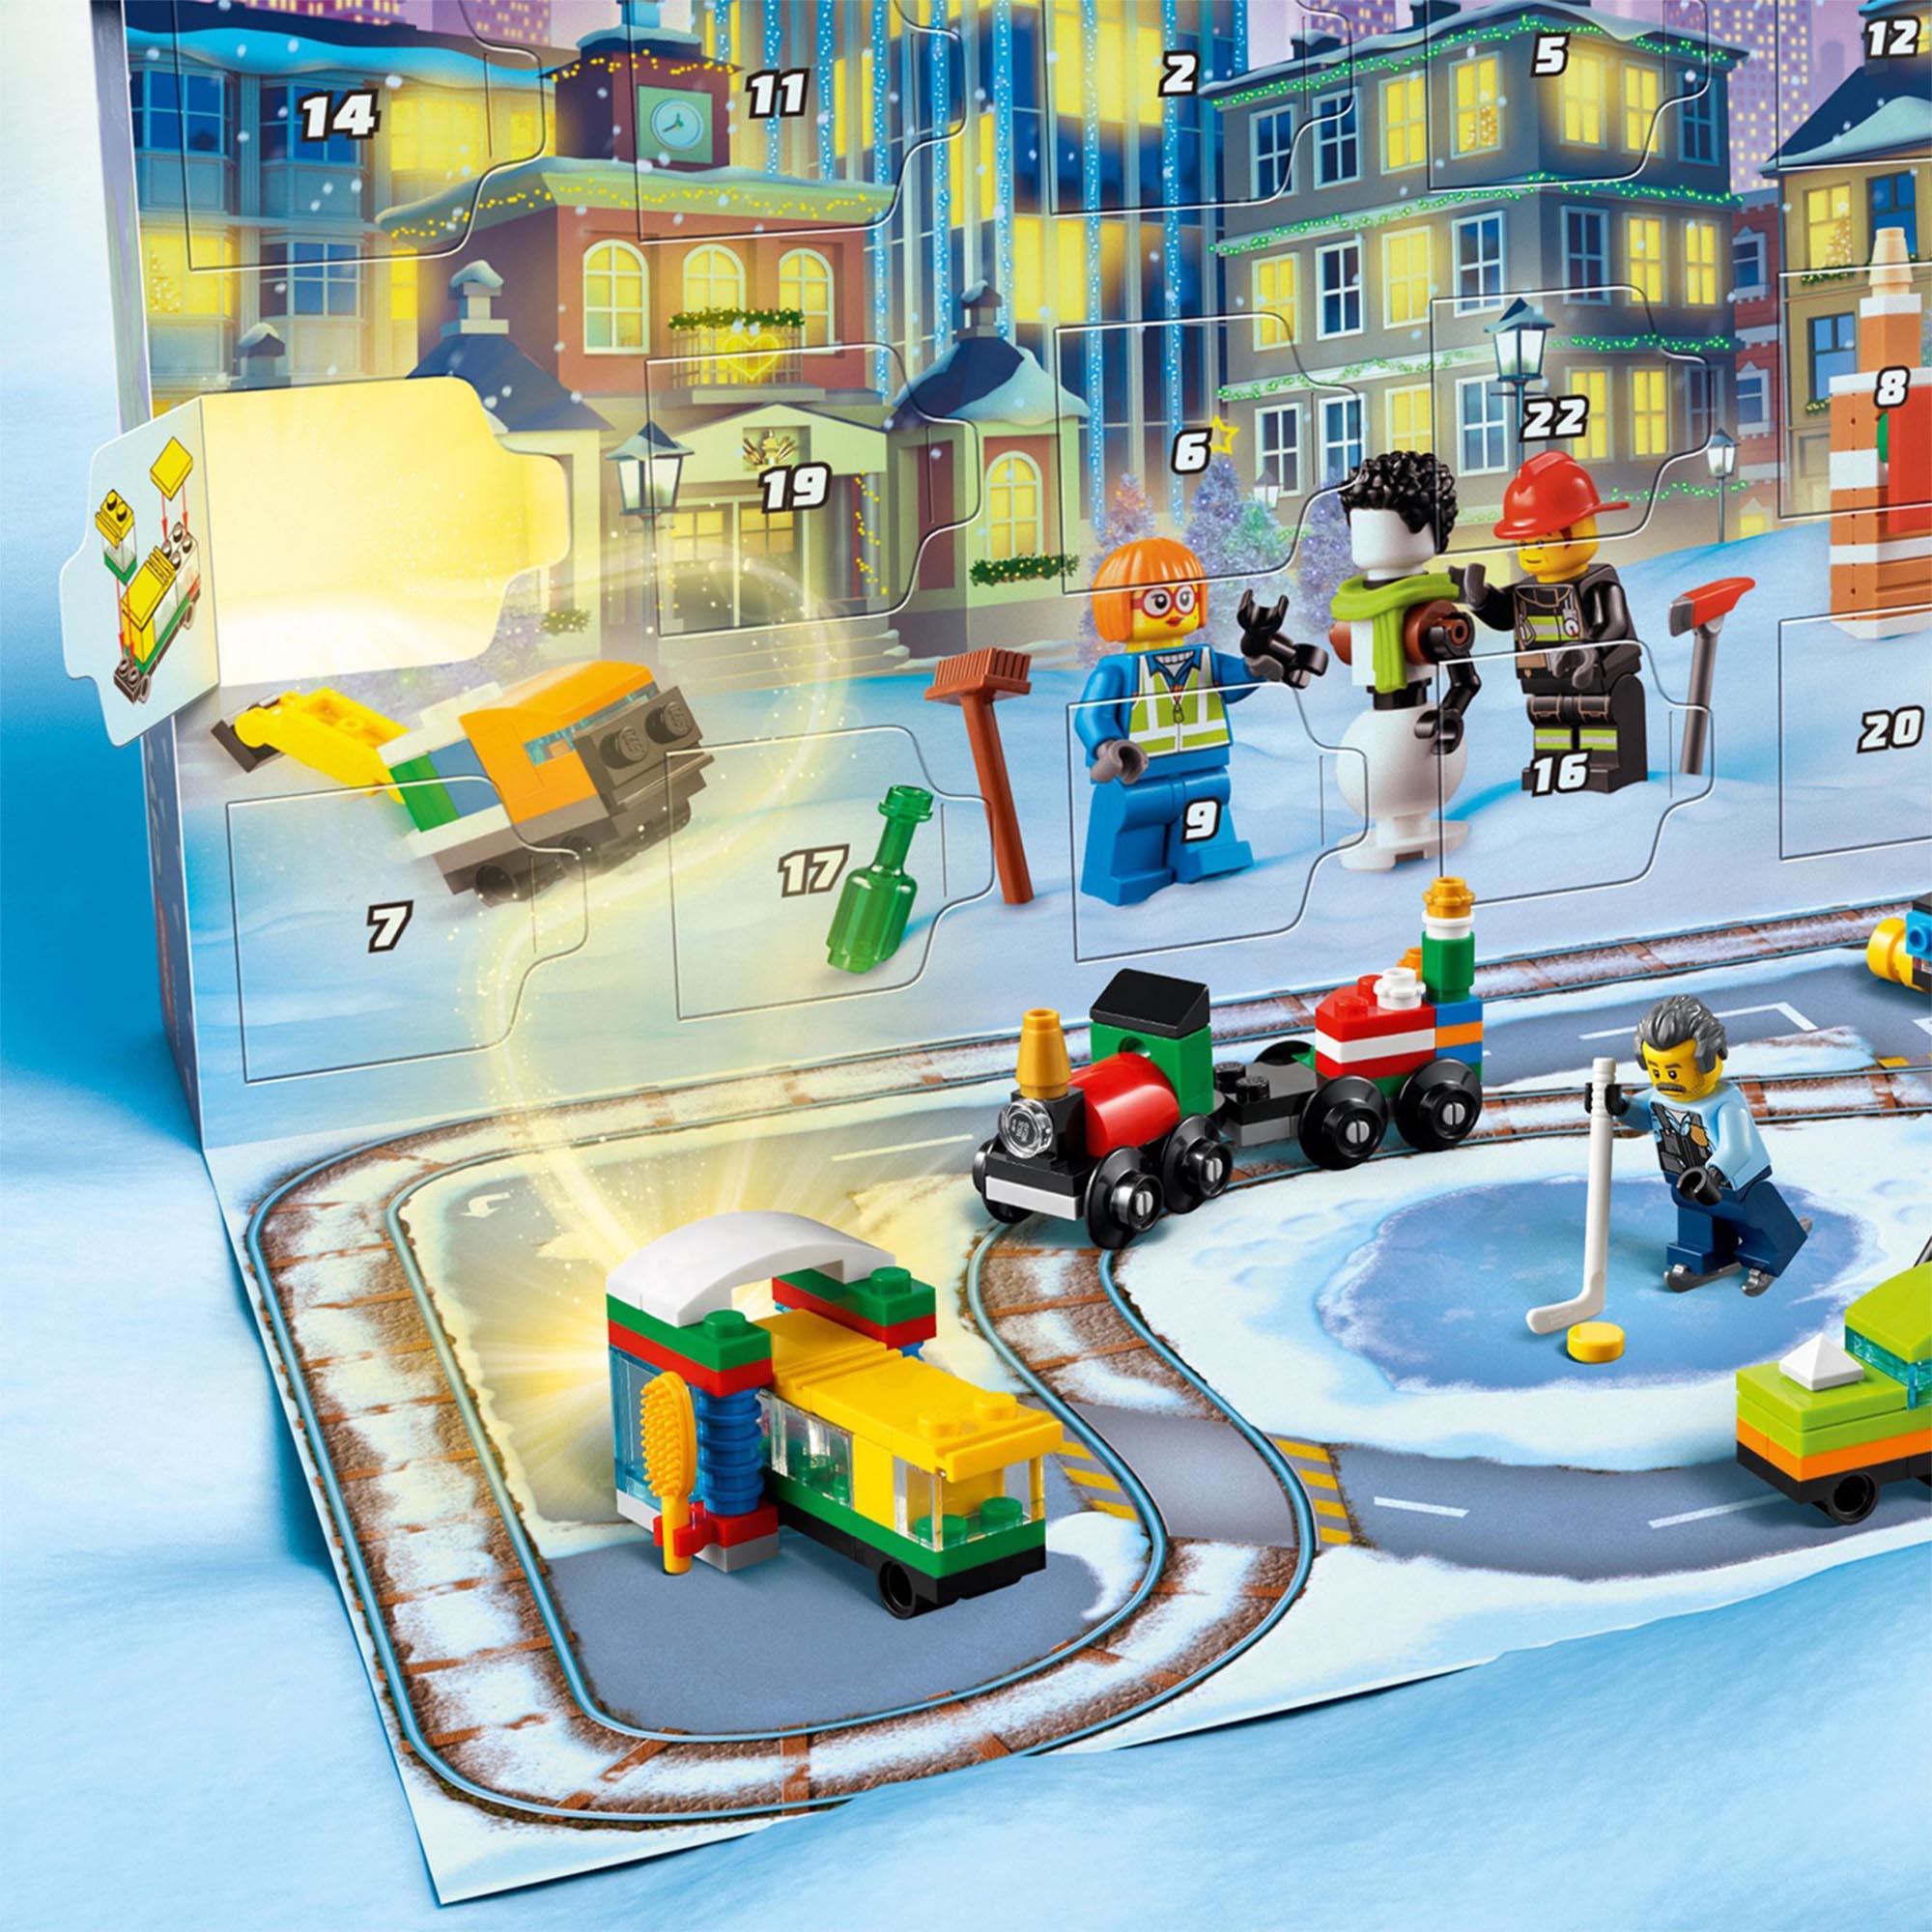 LEGO City Calendario dell'Avvento 2021, Giocattoli Natalizi per Bambini dai 5 A 60303, , large